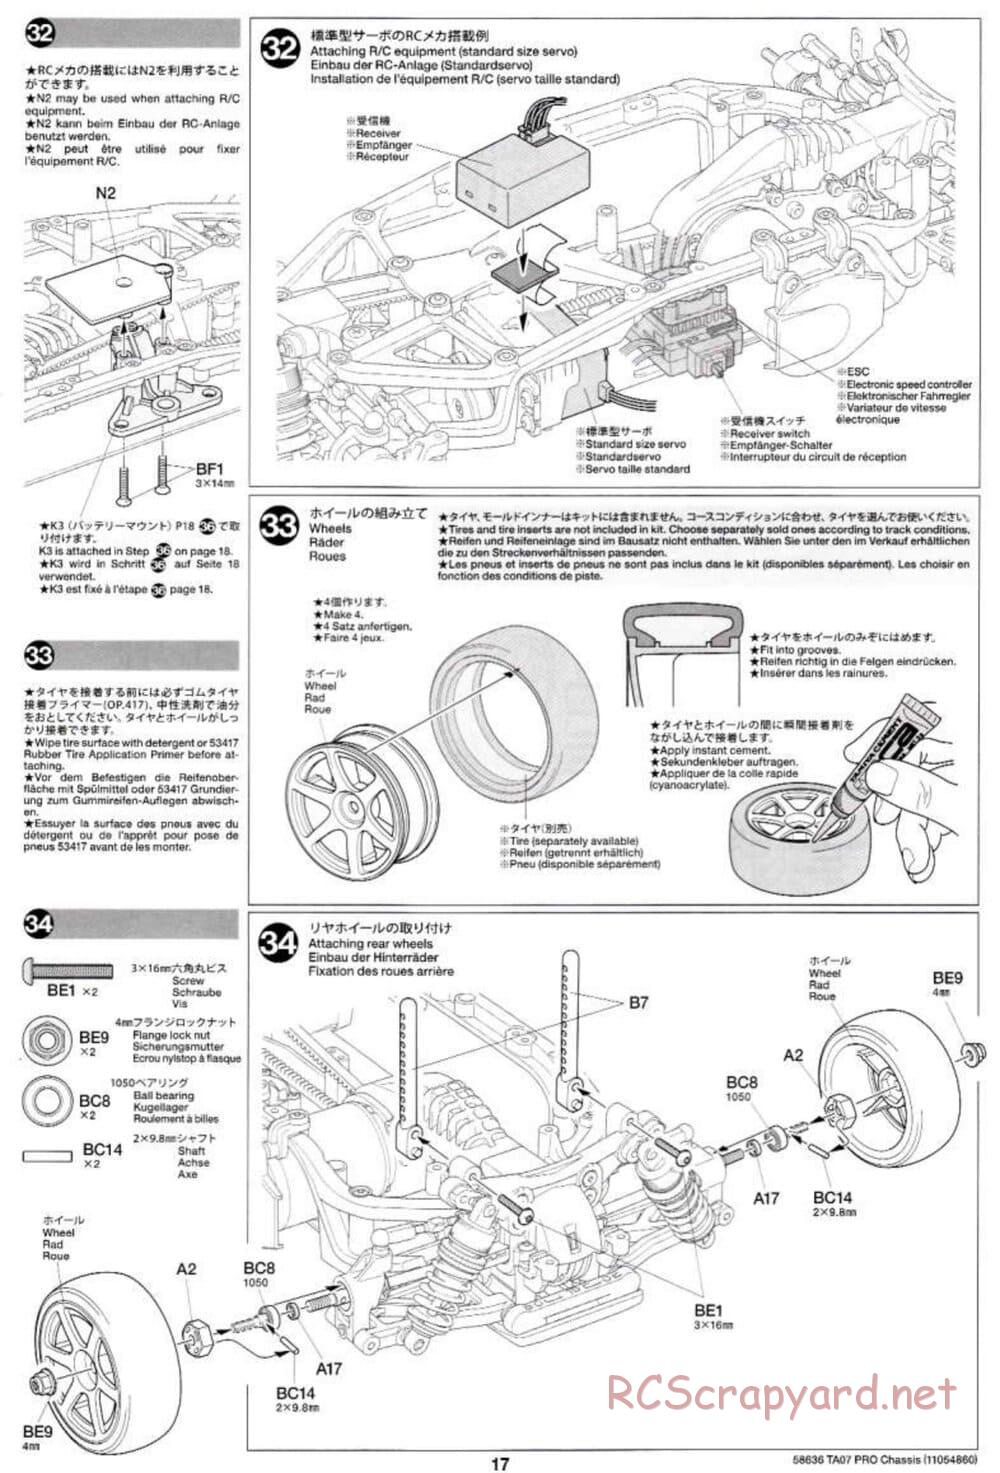 Tamiya - TA07 Pro Chassis - Manual - Page 17